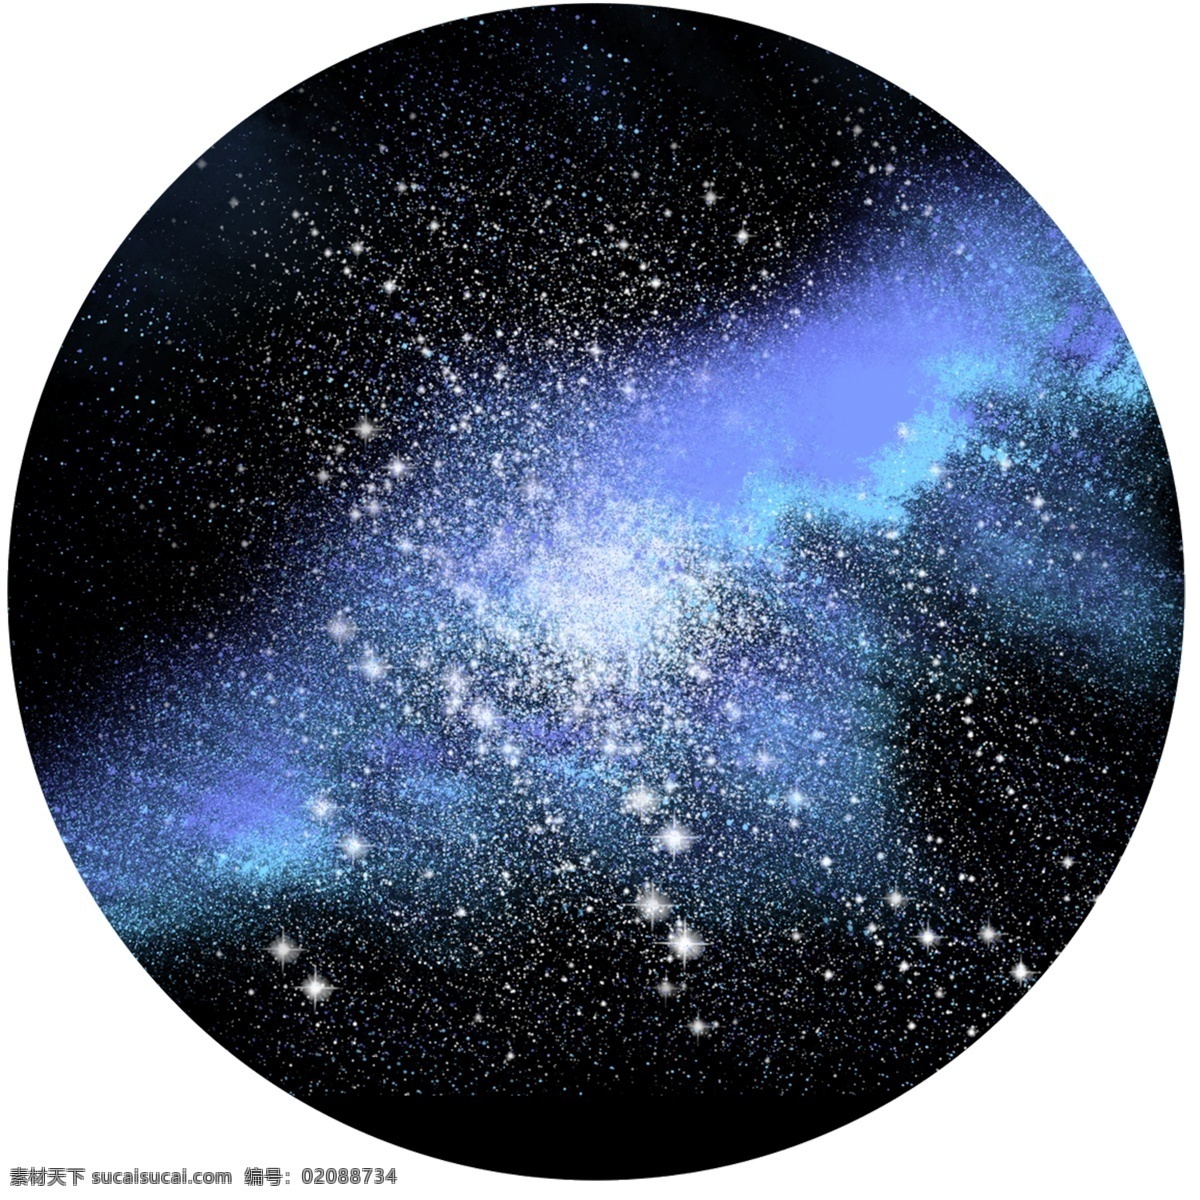 原创 细腻 写实 宇宙 星空 星云 元素 繁星 点点 创意 繁星点点 美丽 奇妙